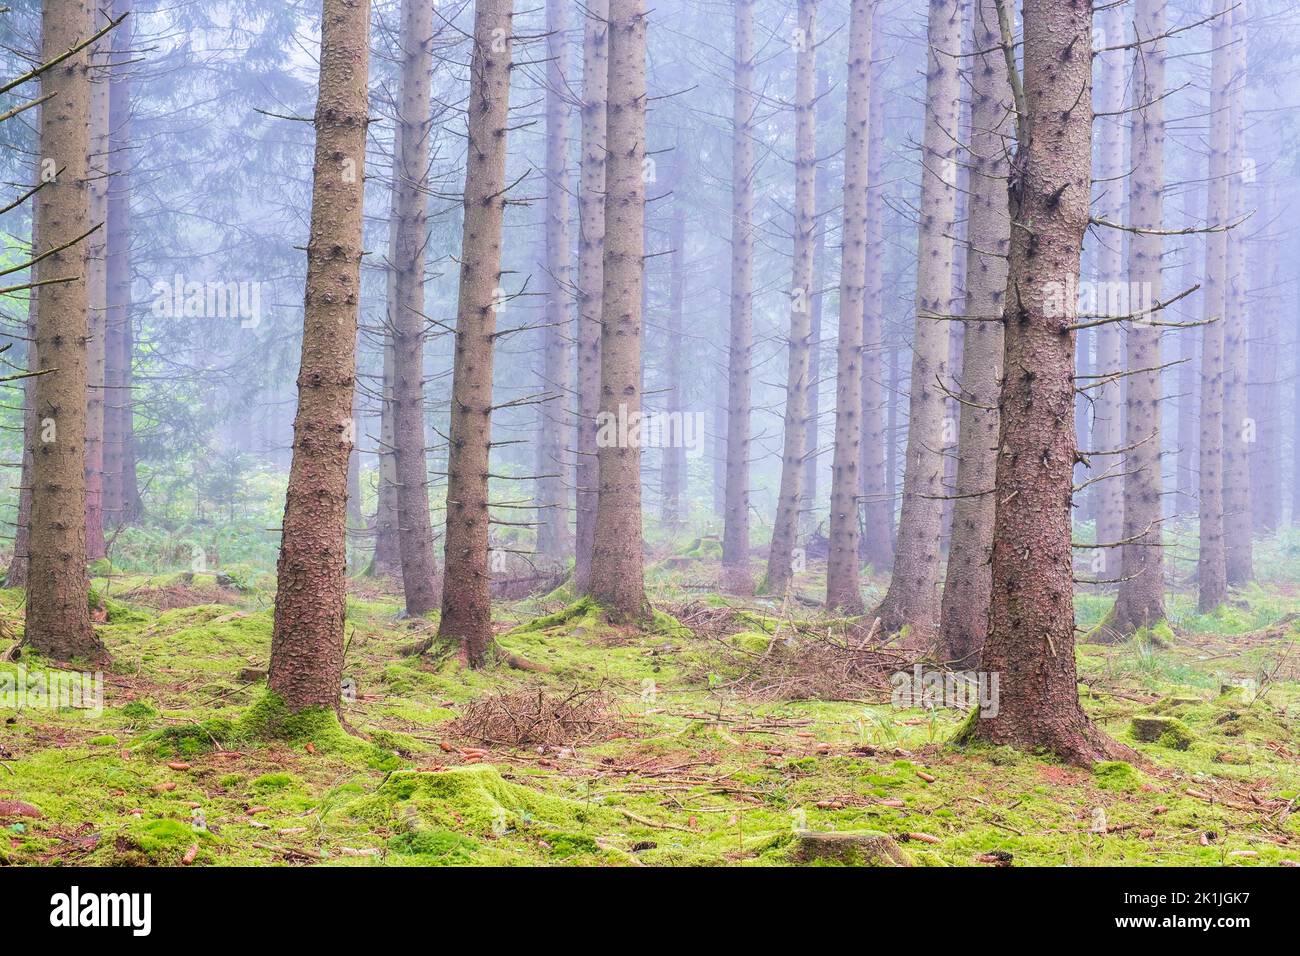 Bosque de coníferas Misty con musgo verde en el suelo del bosque Foto de stock